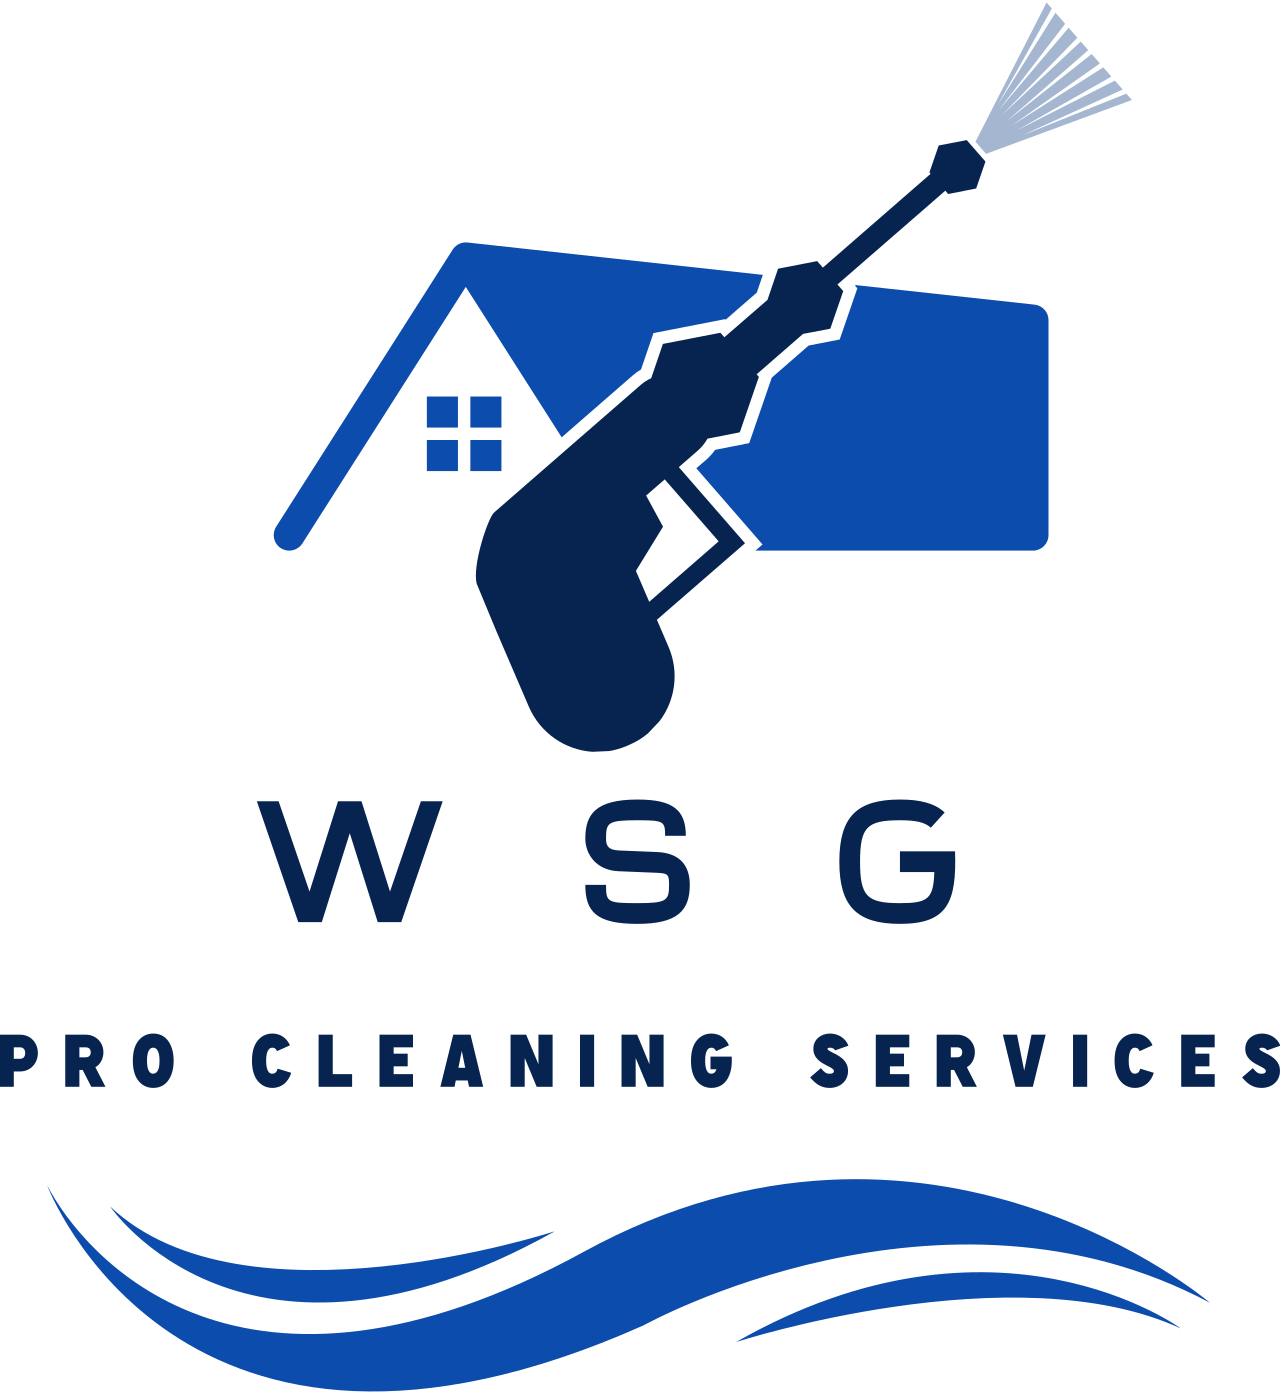 WSG's logo